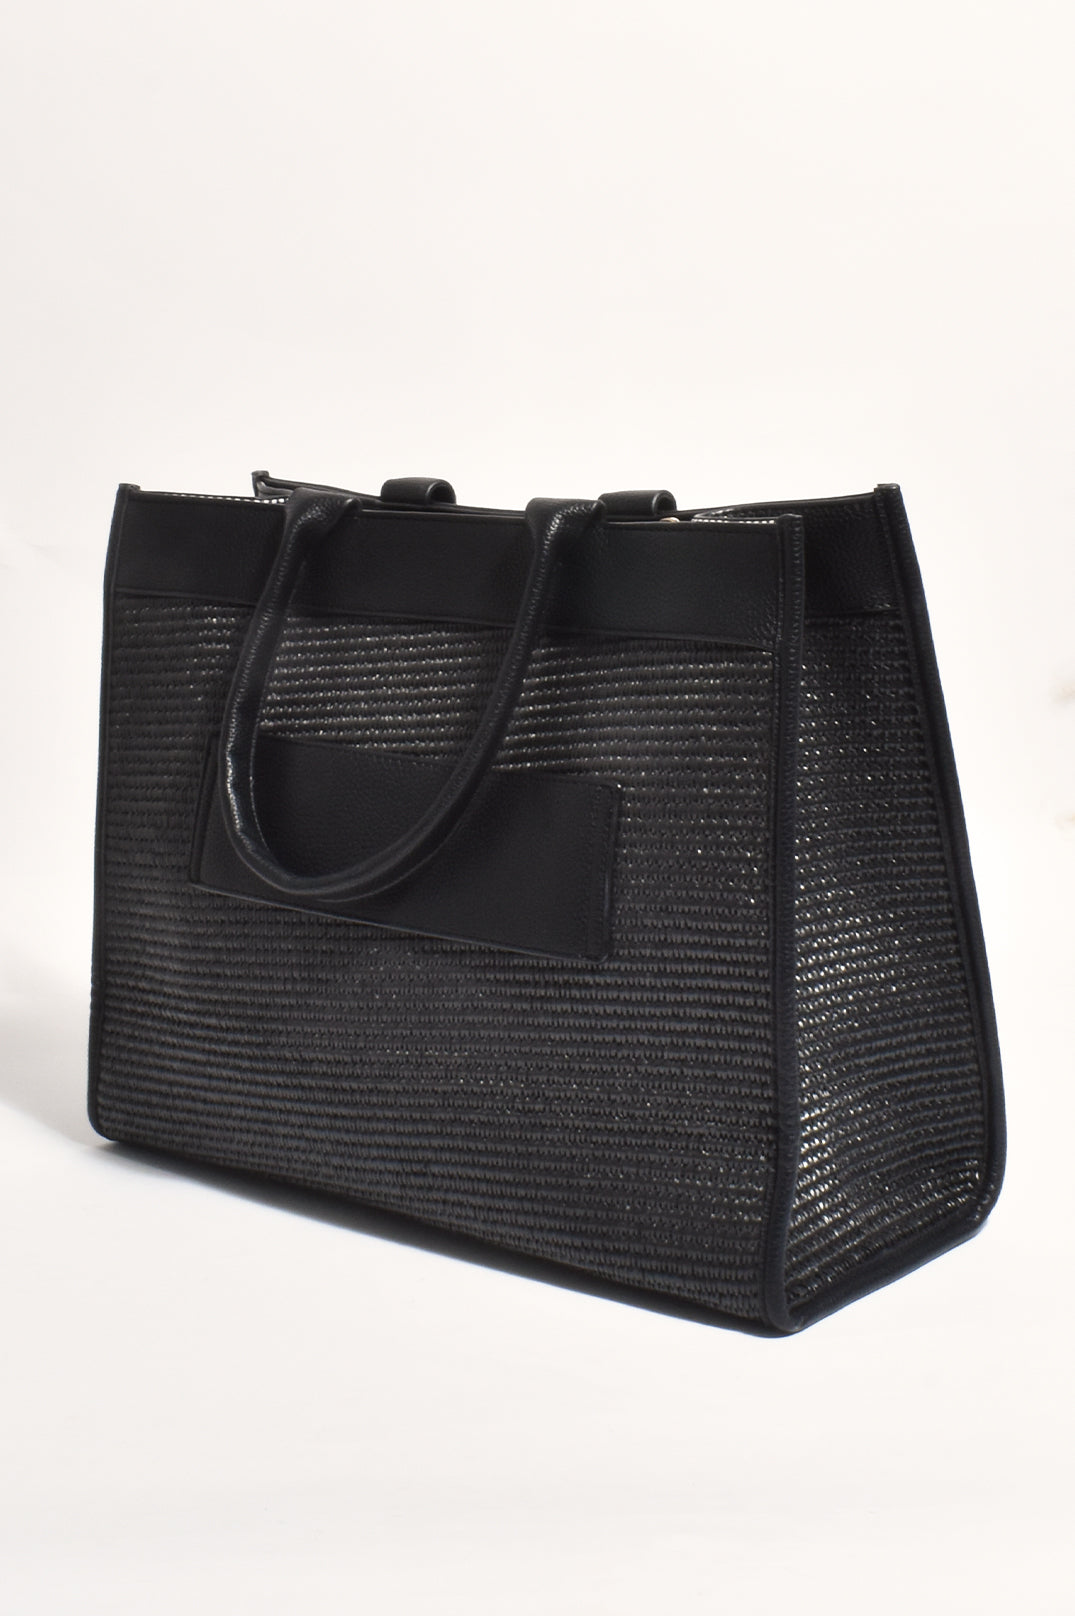 Adorne Kiki Weave Travel Tote Bag - Black